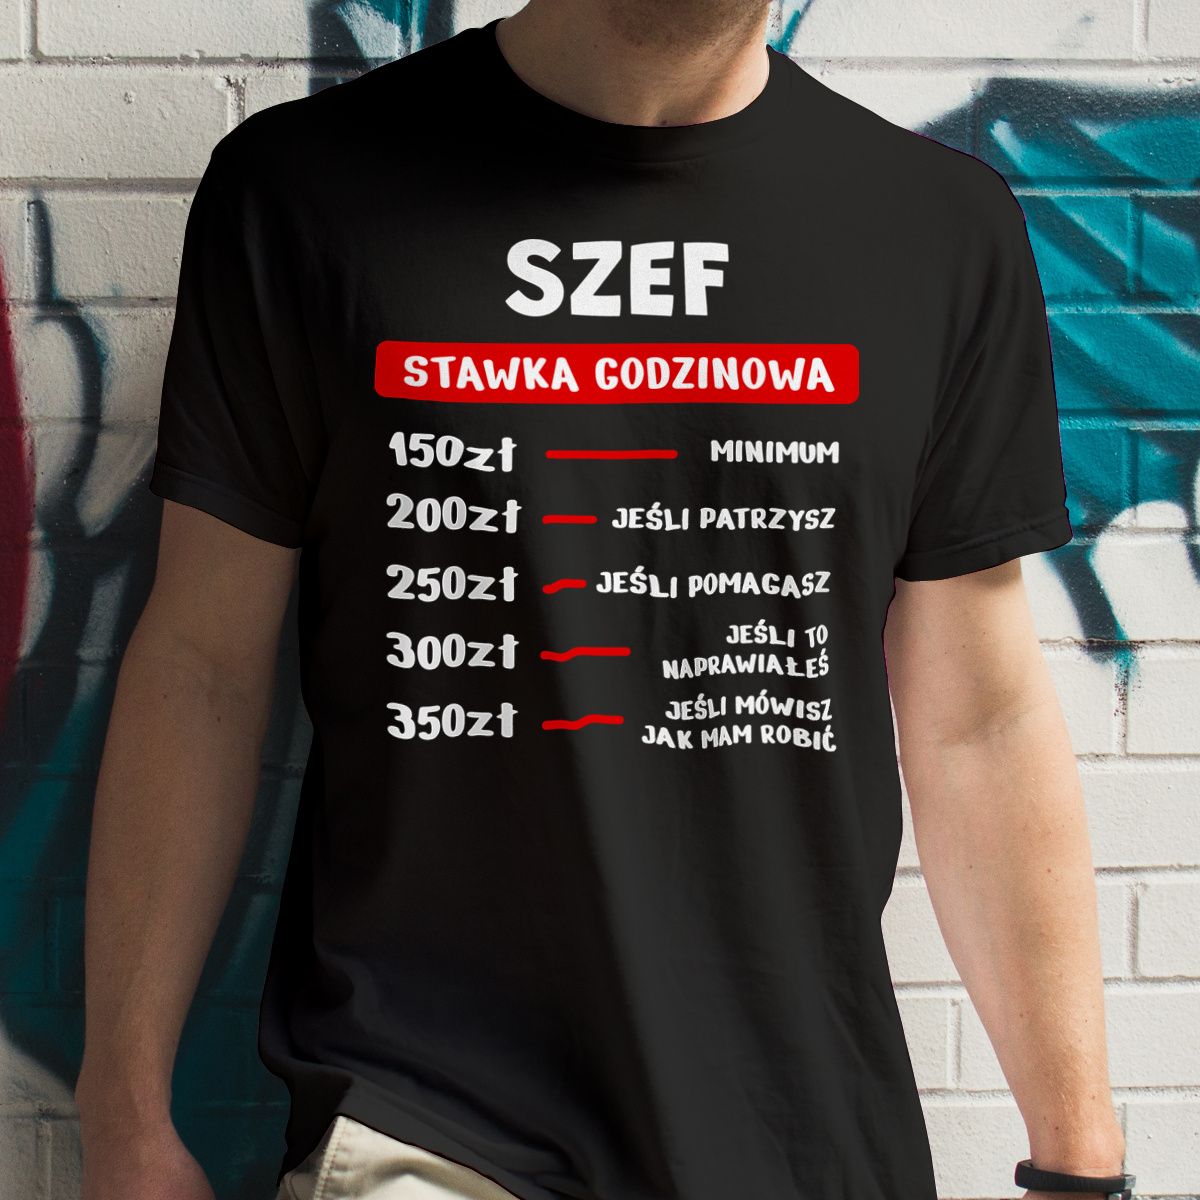 Stawka Godzinowa Szef - Męska Koszulka Czarna